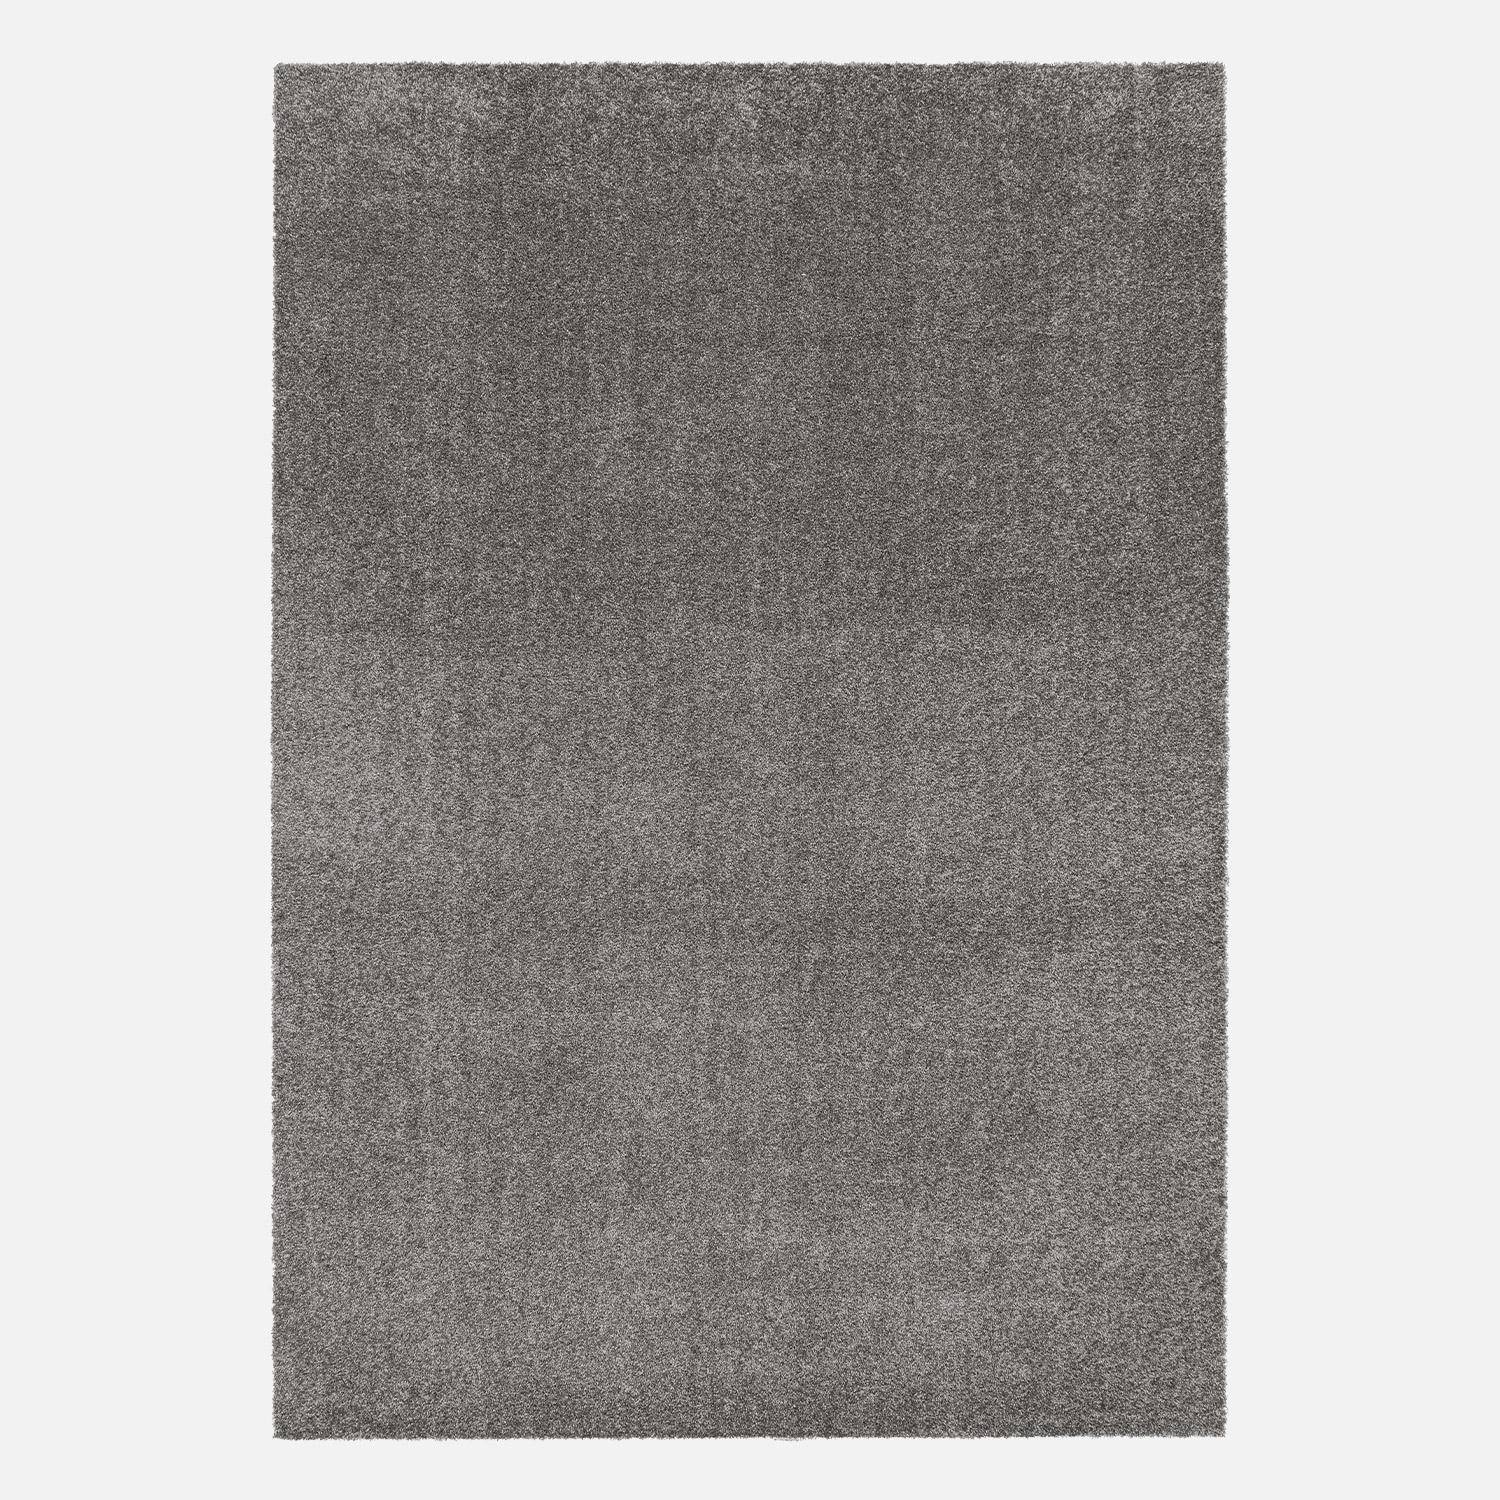 Tappeto per interni in velluto riccio grigio antracite, 120x170cm, a pelo corto con effetto pelo ad anello,sweeek,Photo4